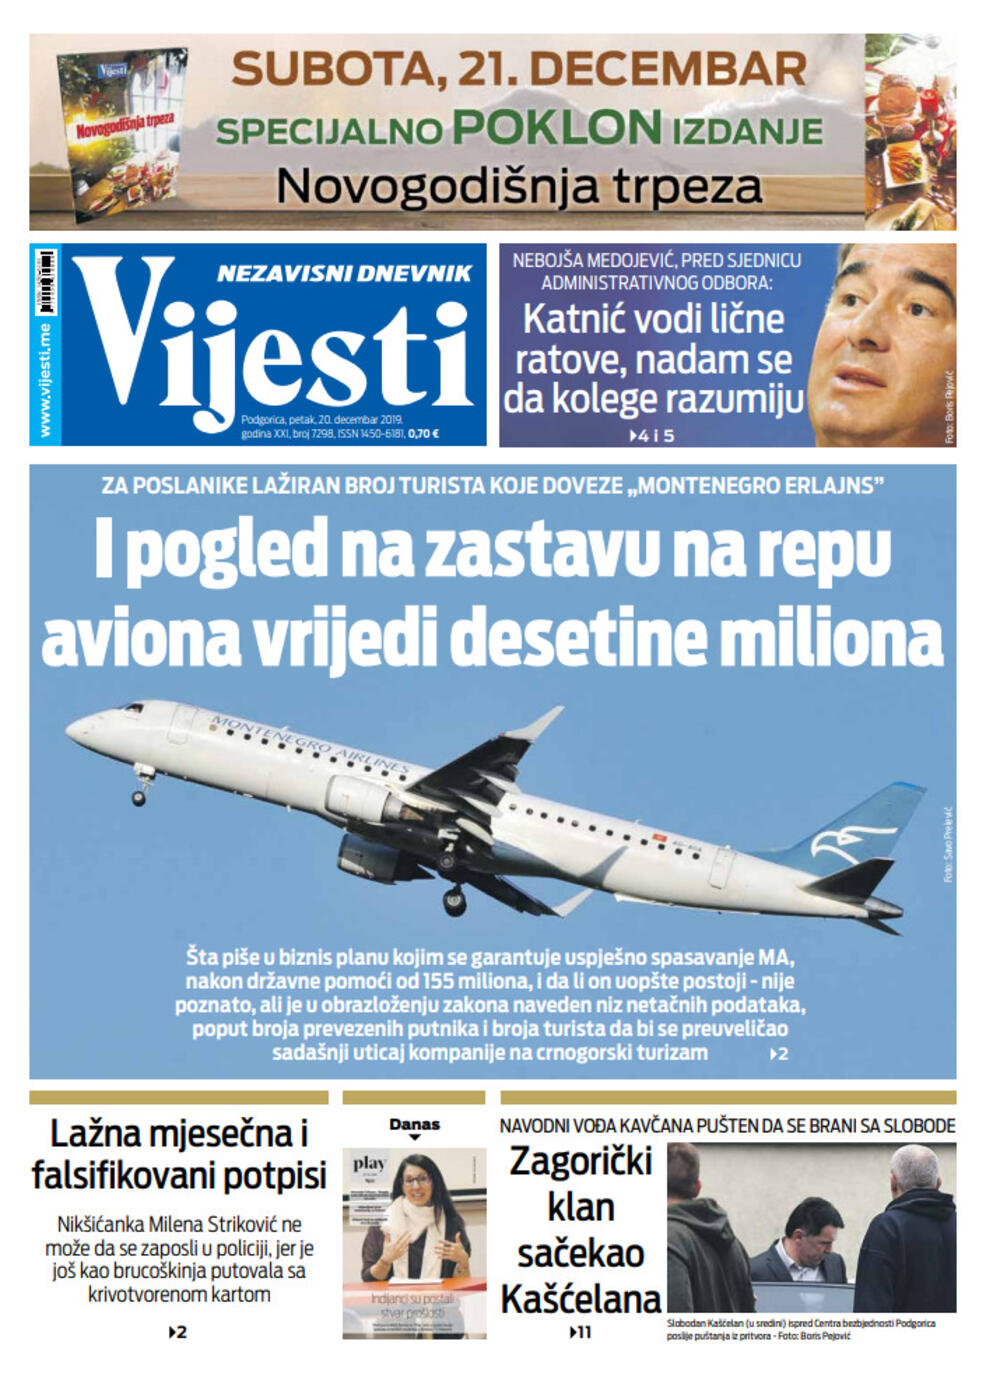 Naslovna strana "Vijesti" za 20. decembar 2019., Foto: Vijesti